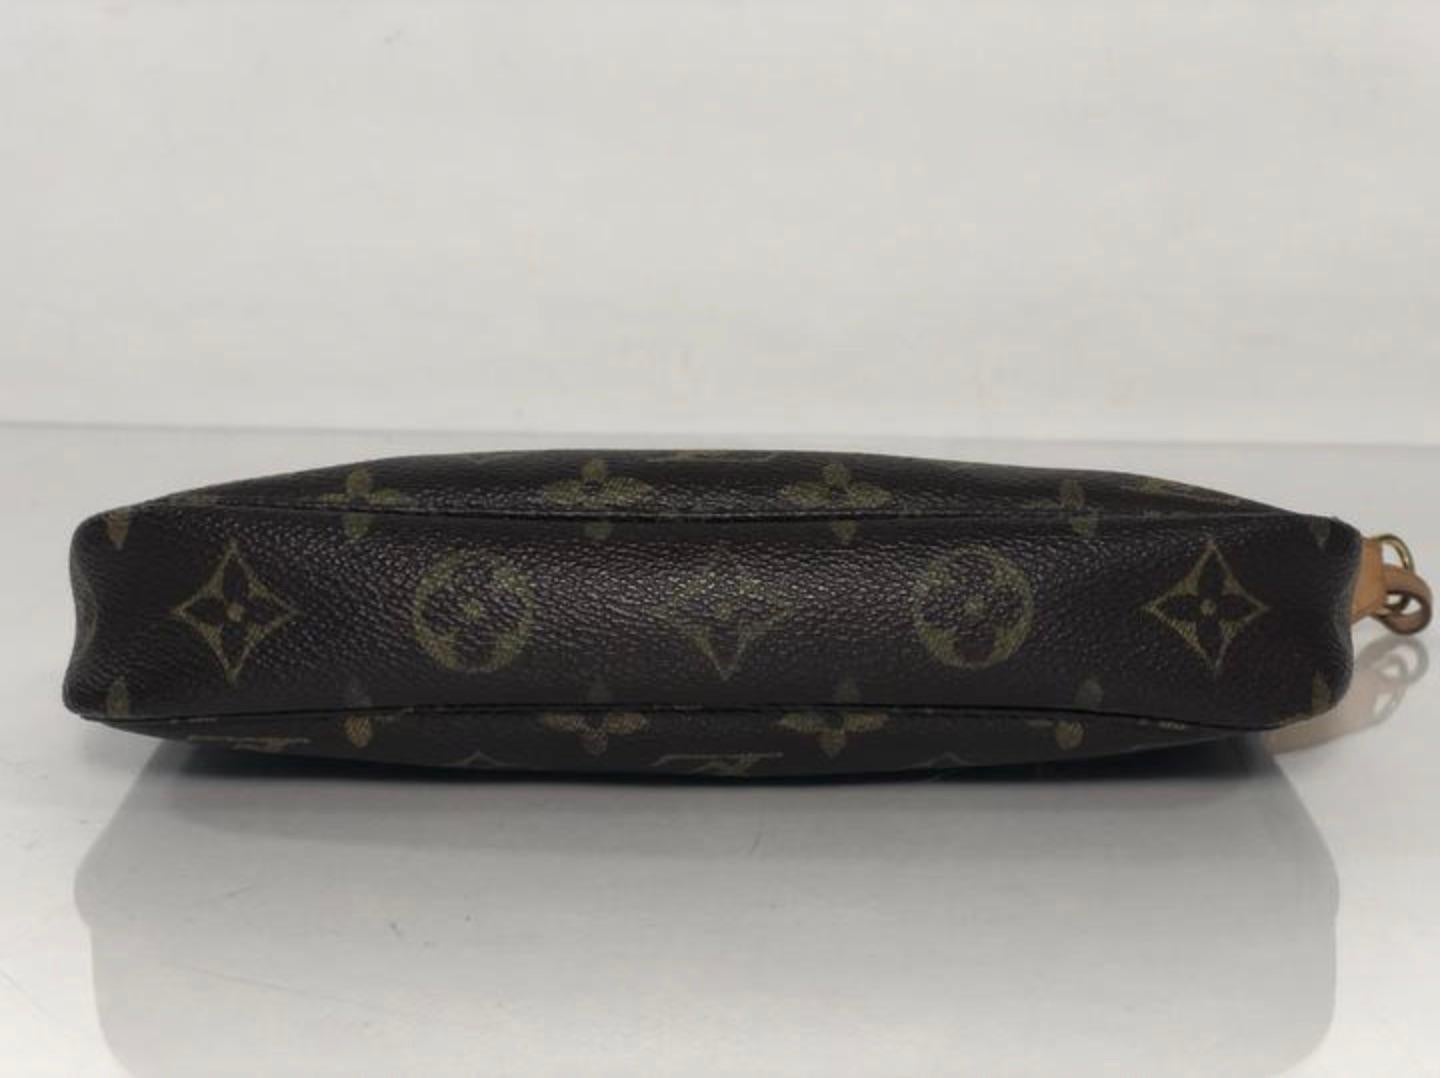  Louis Vuitton Monogram Pochette Accessories Wristlet Handbag For Sale 1